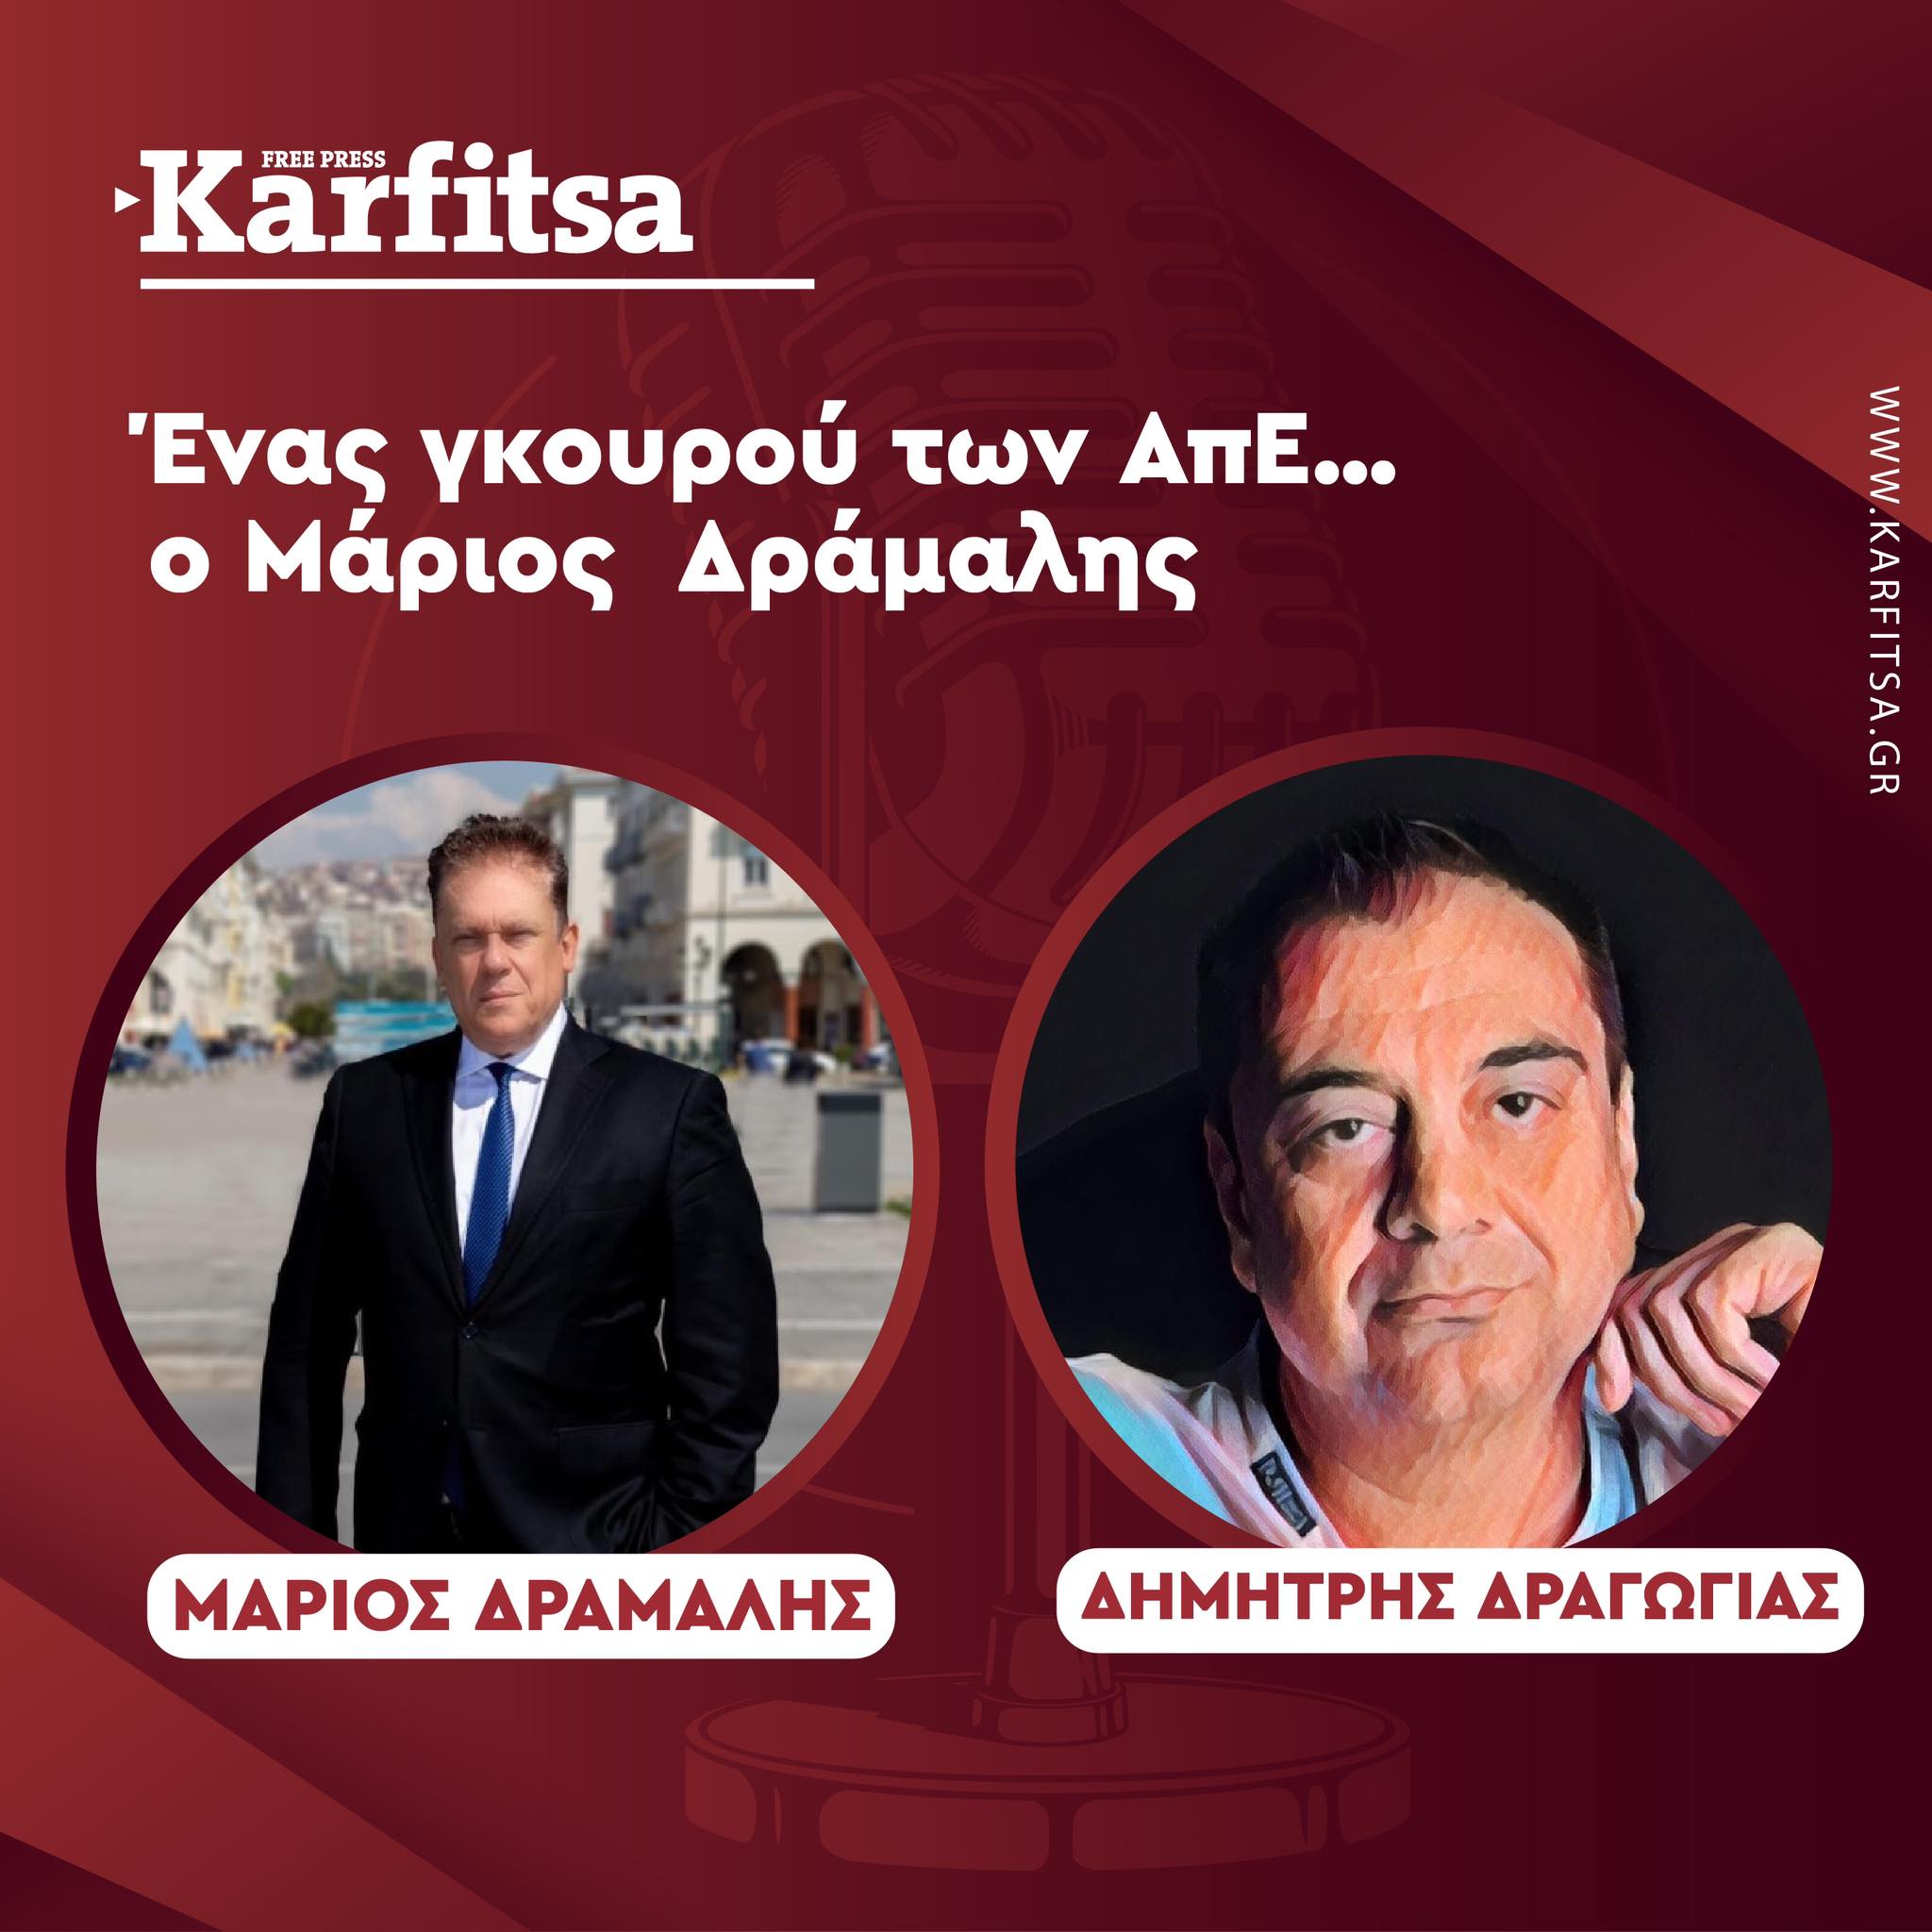 Μάριος Δράμαλης, ένας «γκουρού» των ΑπΕ υποψήφιος με την ΝΔ στην Α’ Θεσσαλονίκης (Podcast)